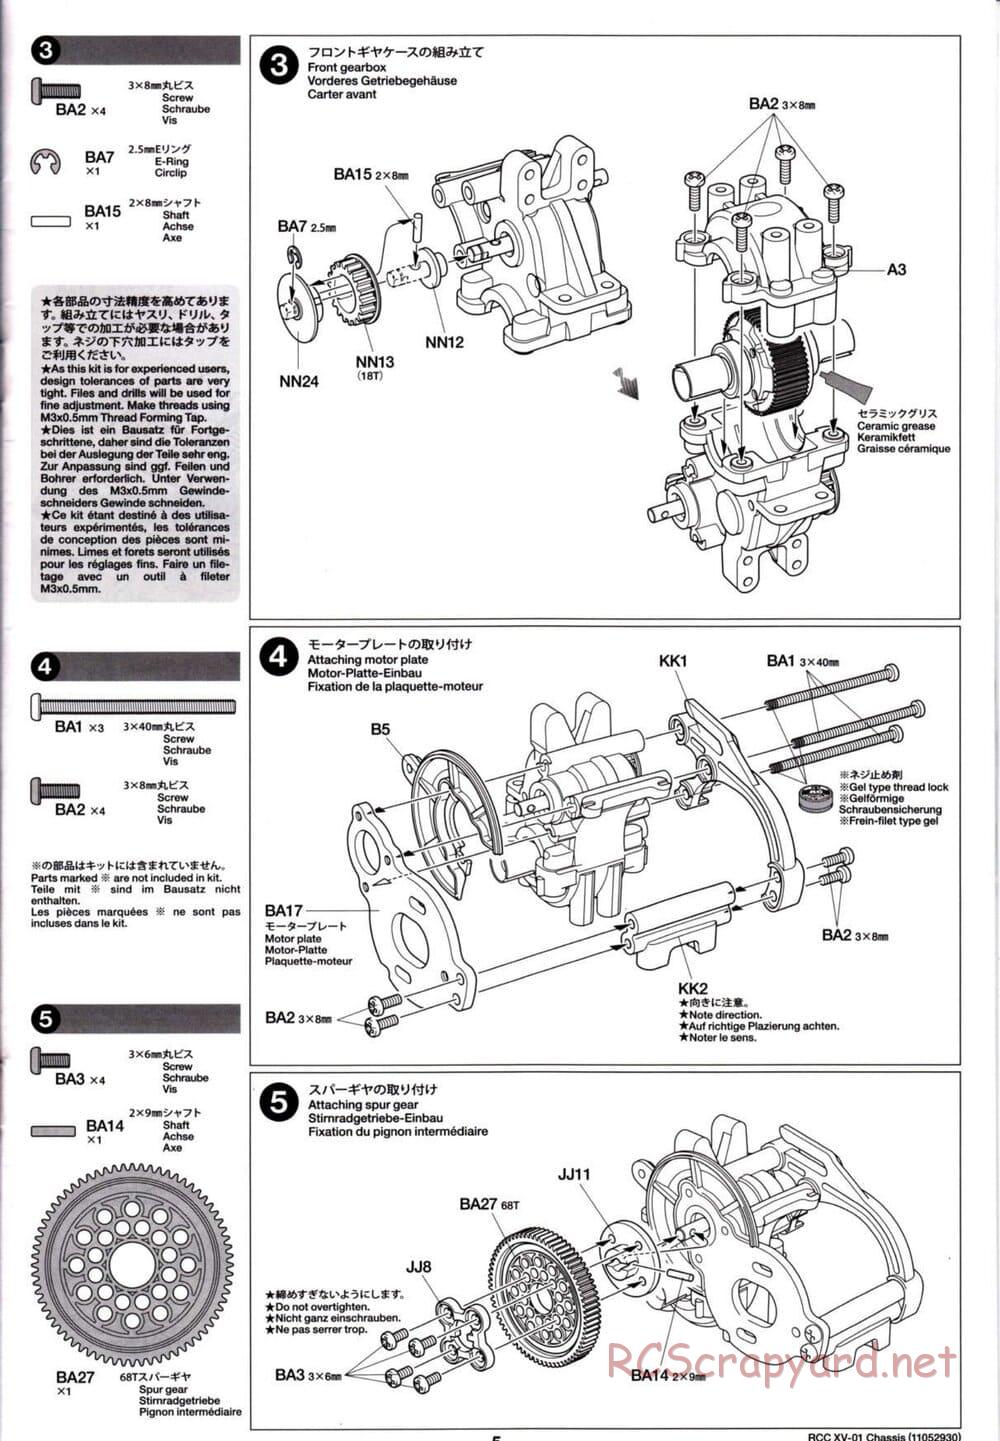 Tamiya - XV-01 Chassis - Manual - Page 5